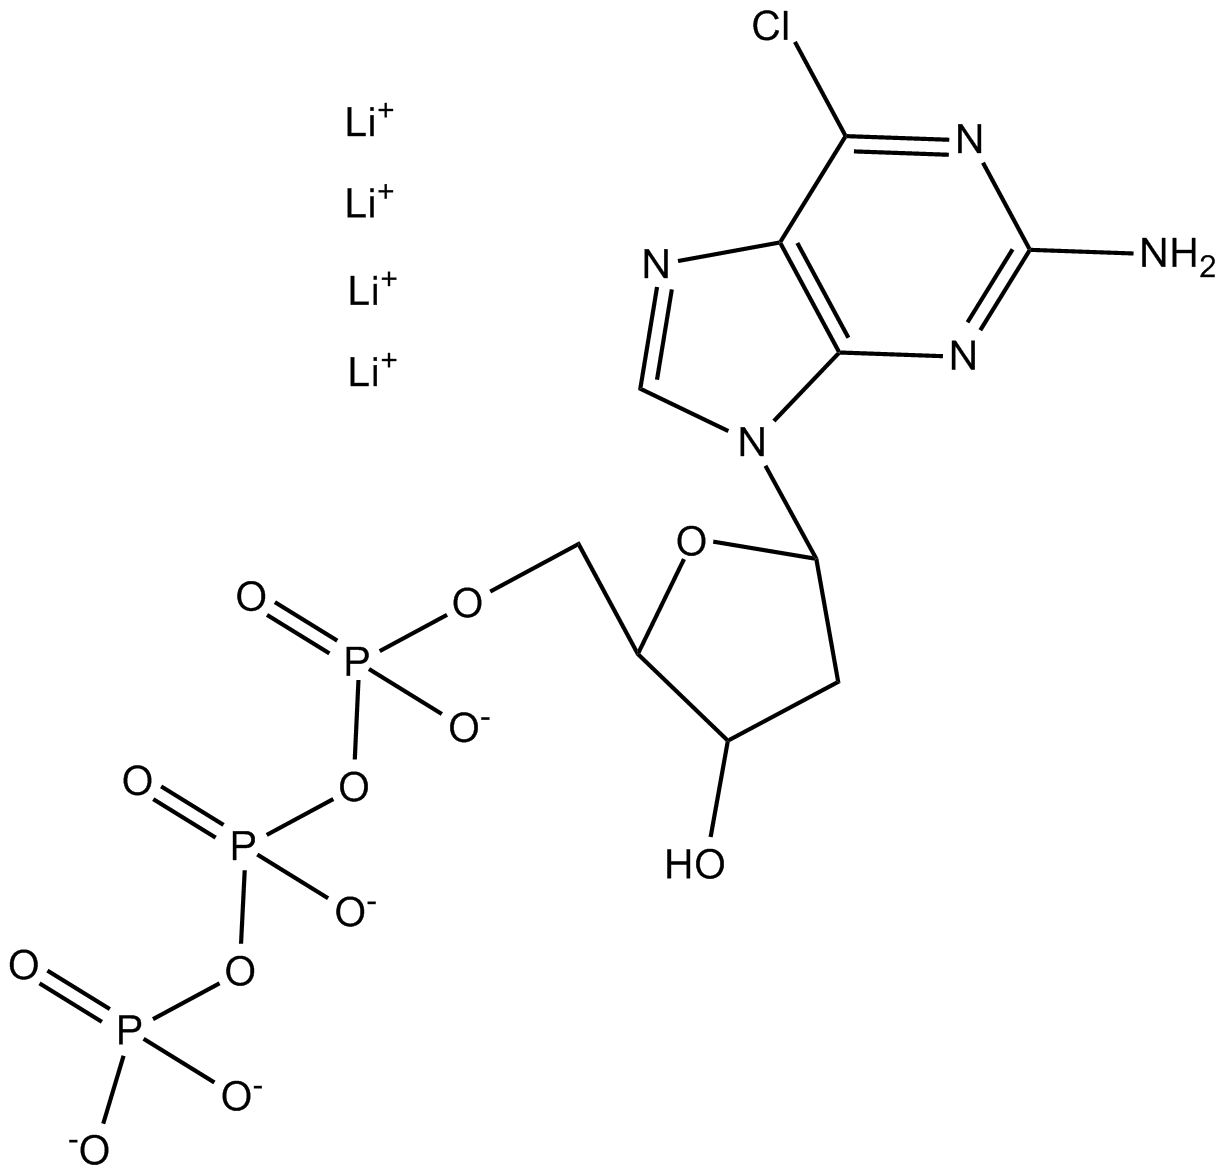 2-Amino-6-Cl-purine-drTP